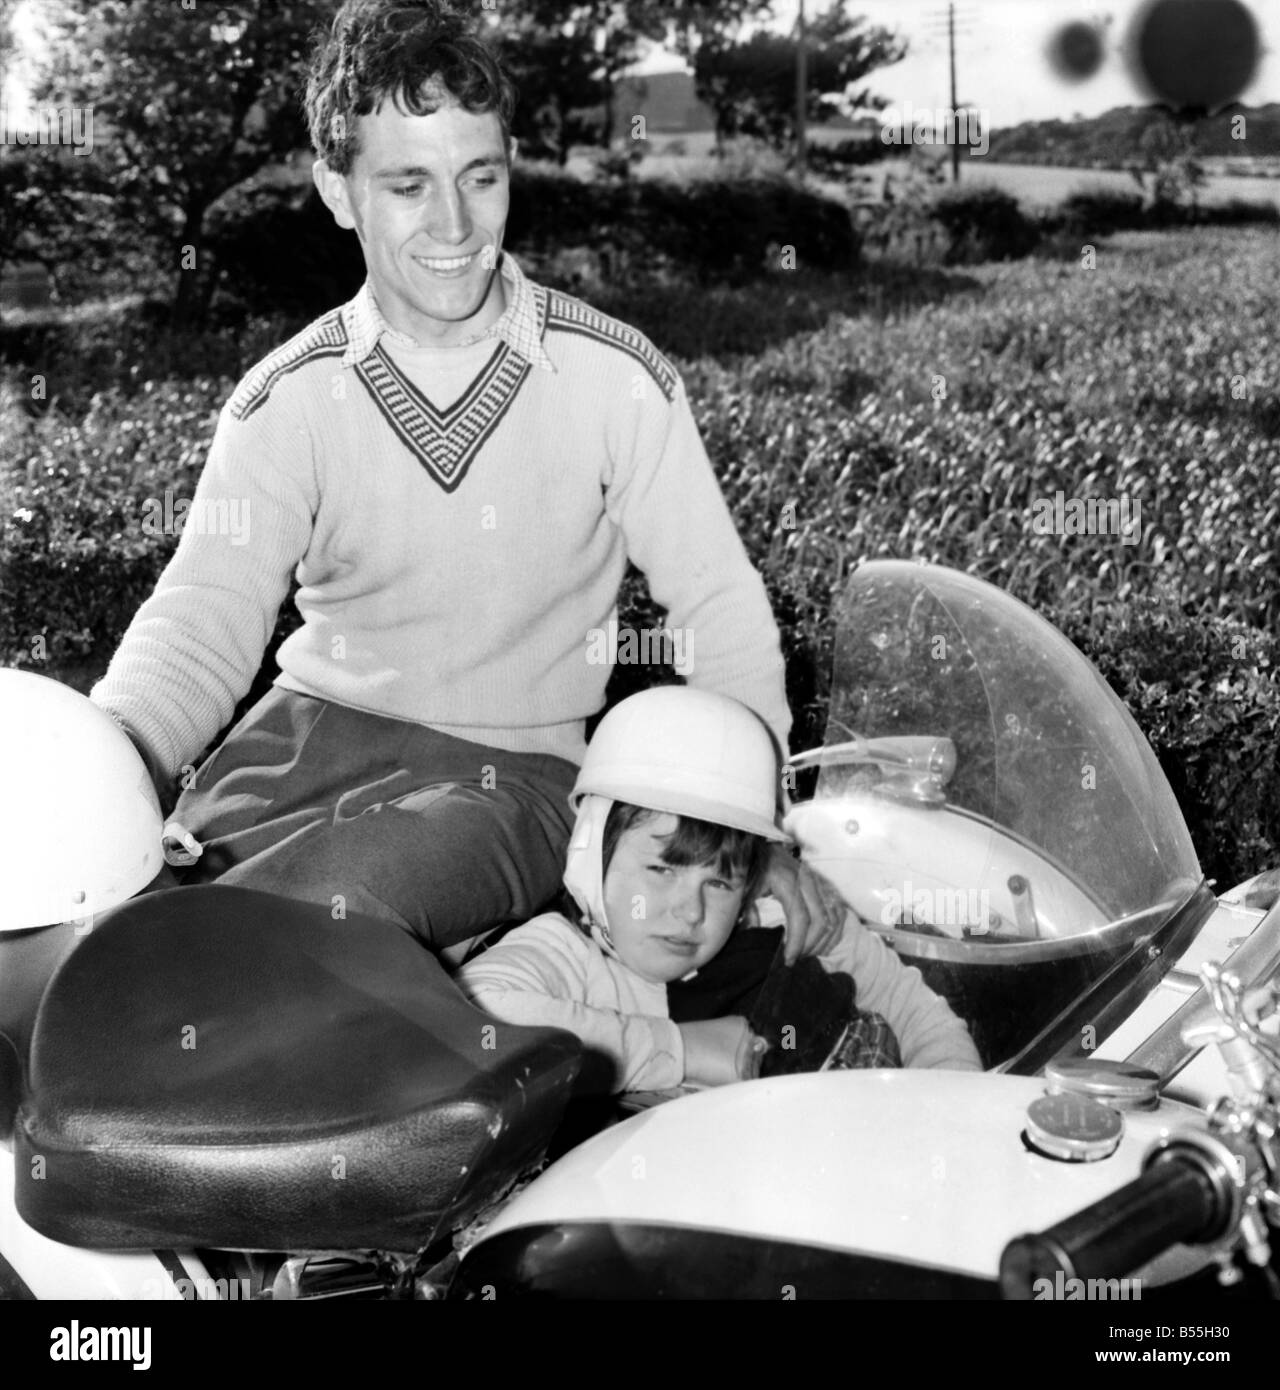 Moto avec side-car young man and girl : 12 ans avec son Burton Lyn airman penpal Ken Skuse l'âge de 22 ans à son domicile à Standish près de Wigan. Juin 1960 M4461-001 Banque D'Images